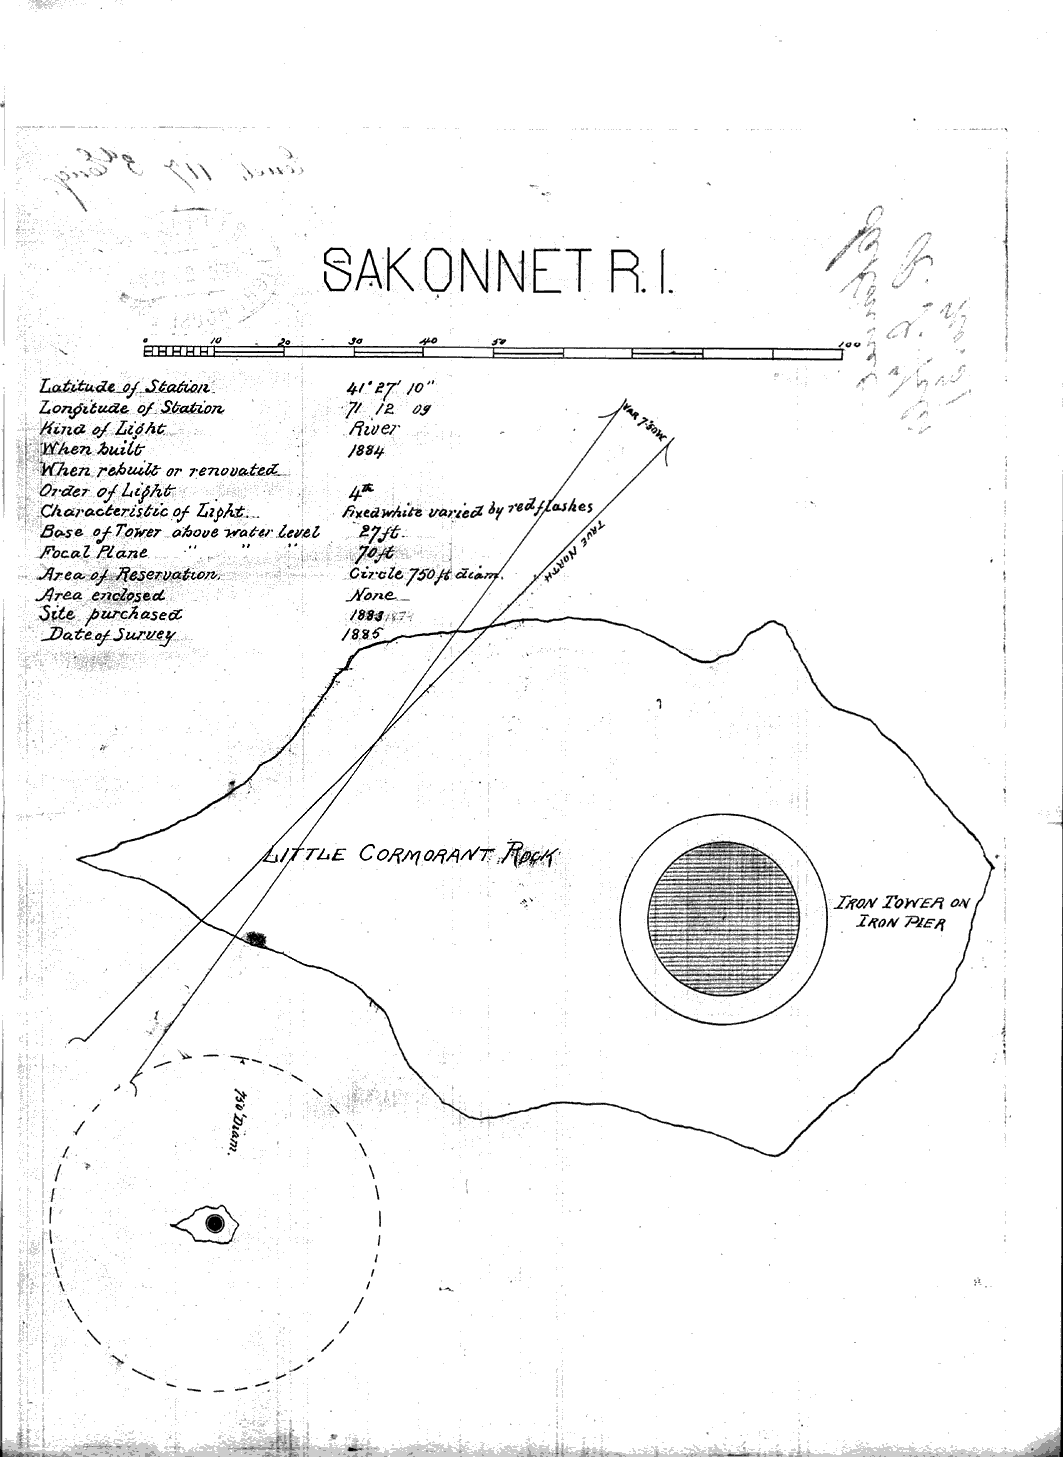 Sakonnet Point Light - Sakonnet Point Lighthouse Map 3 - page 6